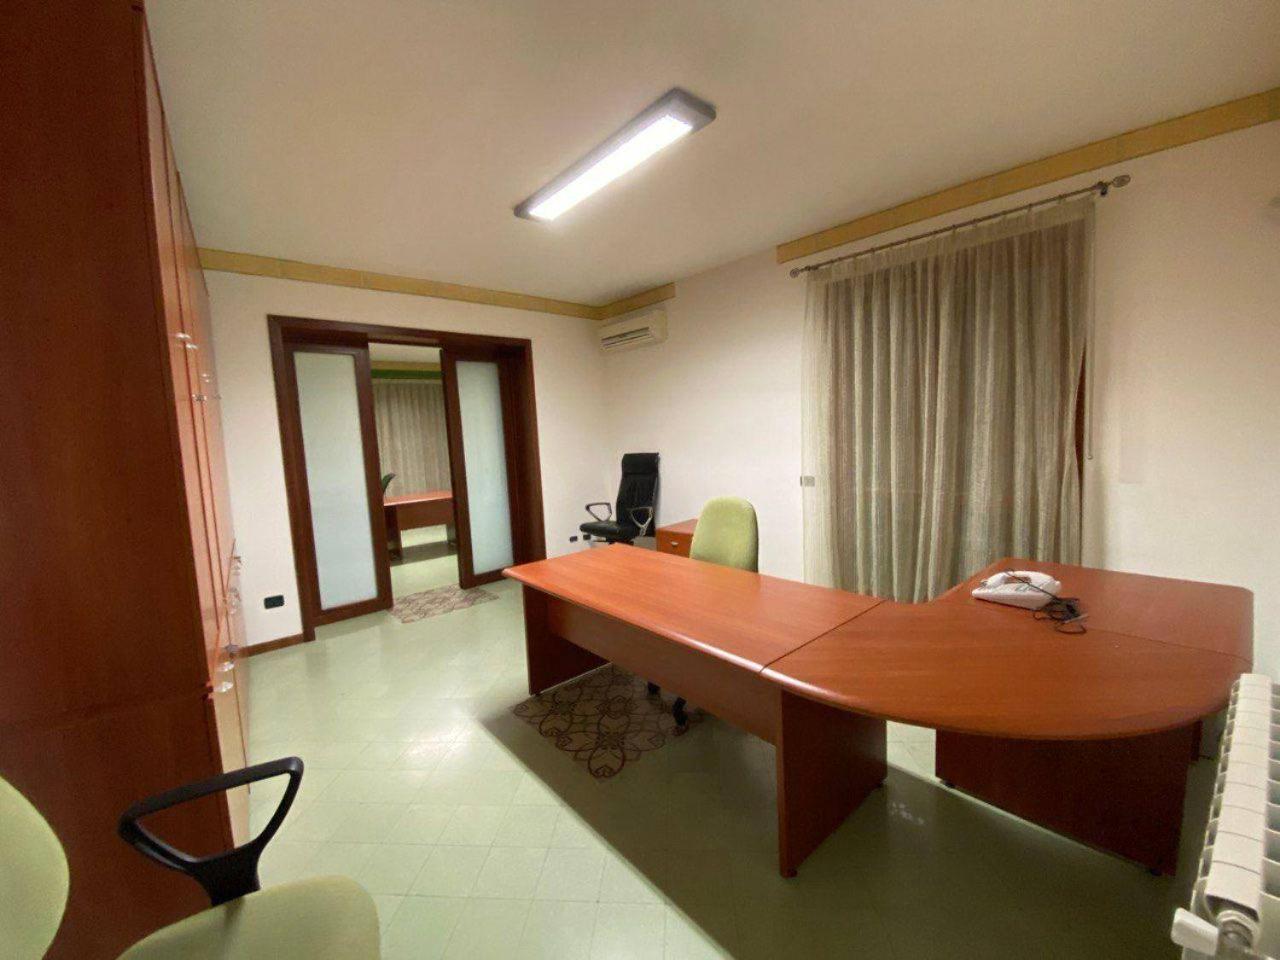 Ufficio condiviso in affitto a Castelvetrano